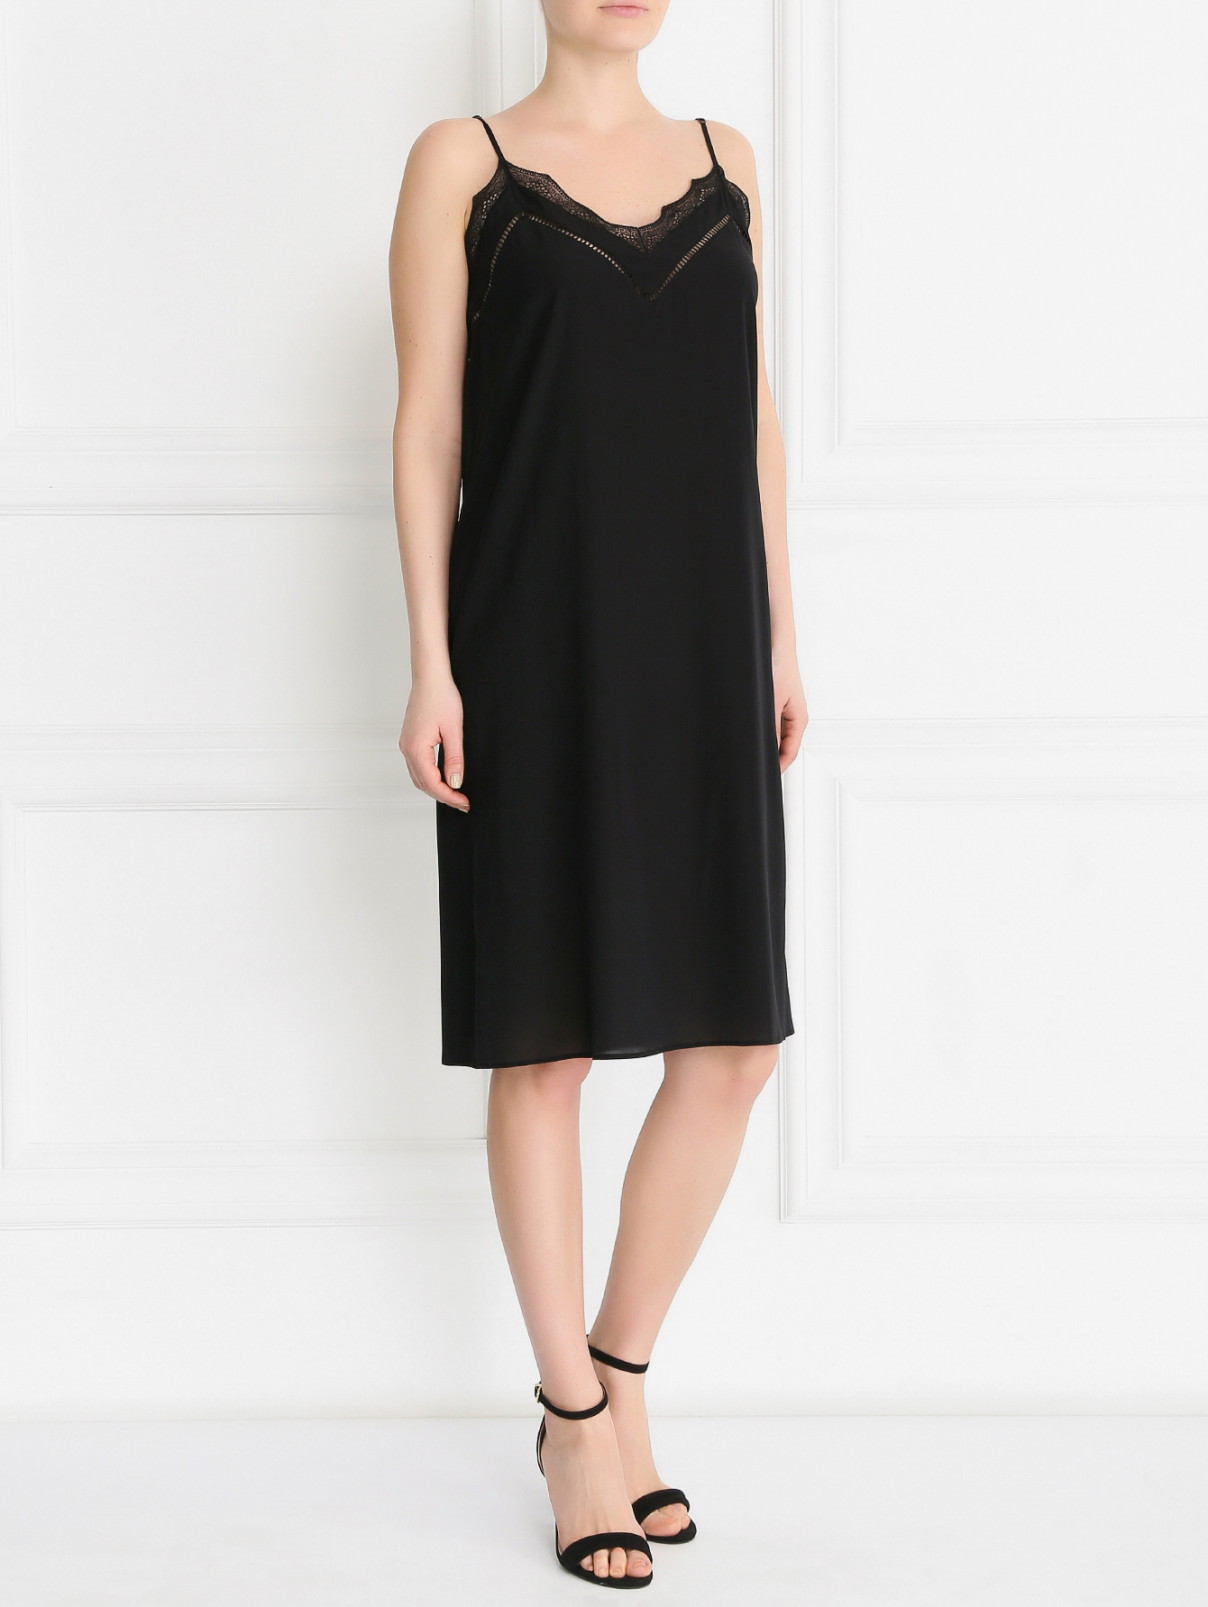 Платье из шелка с декоративной отделкой Veronique Branquinho  –  Модель Общий вид  – Цвет:  Черный